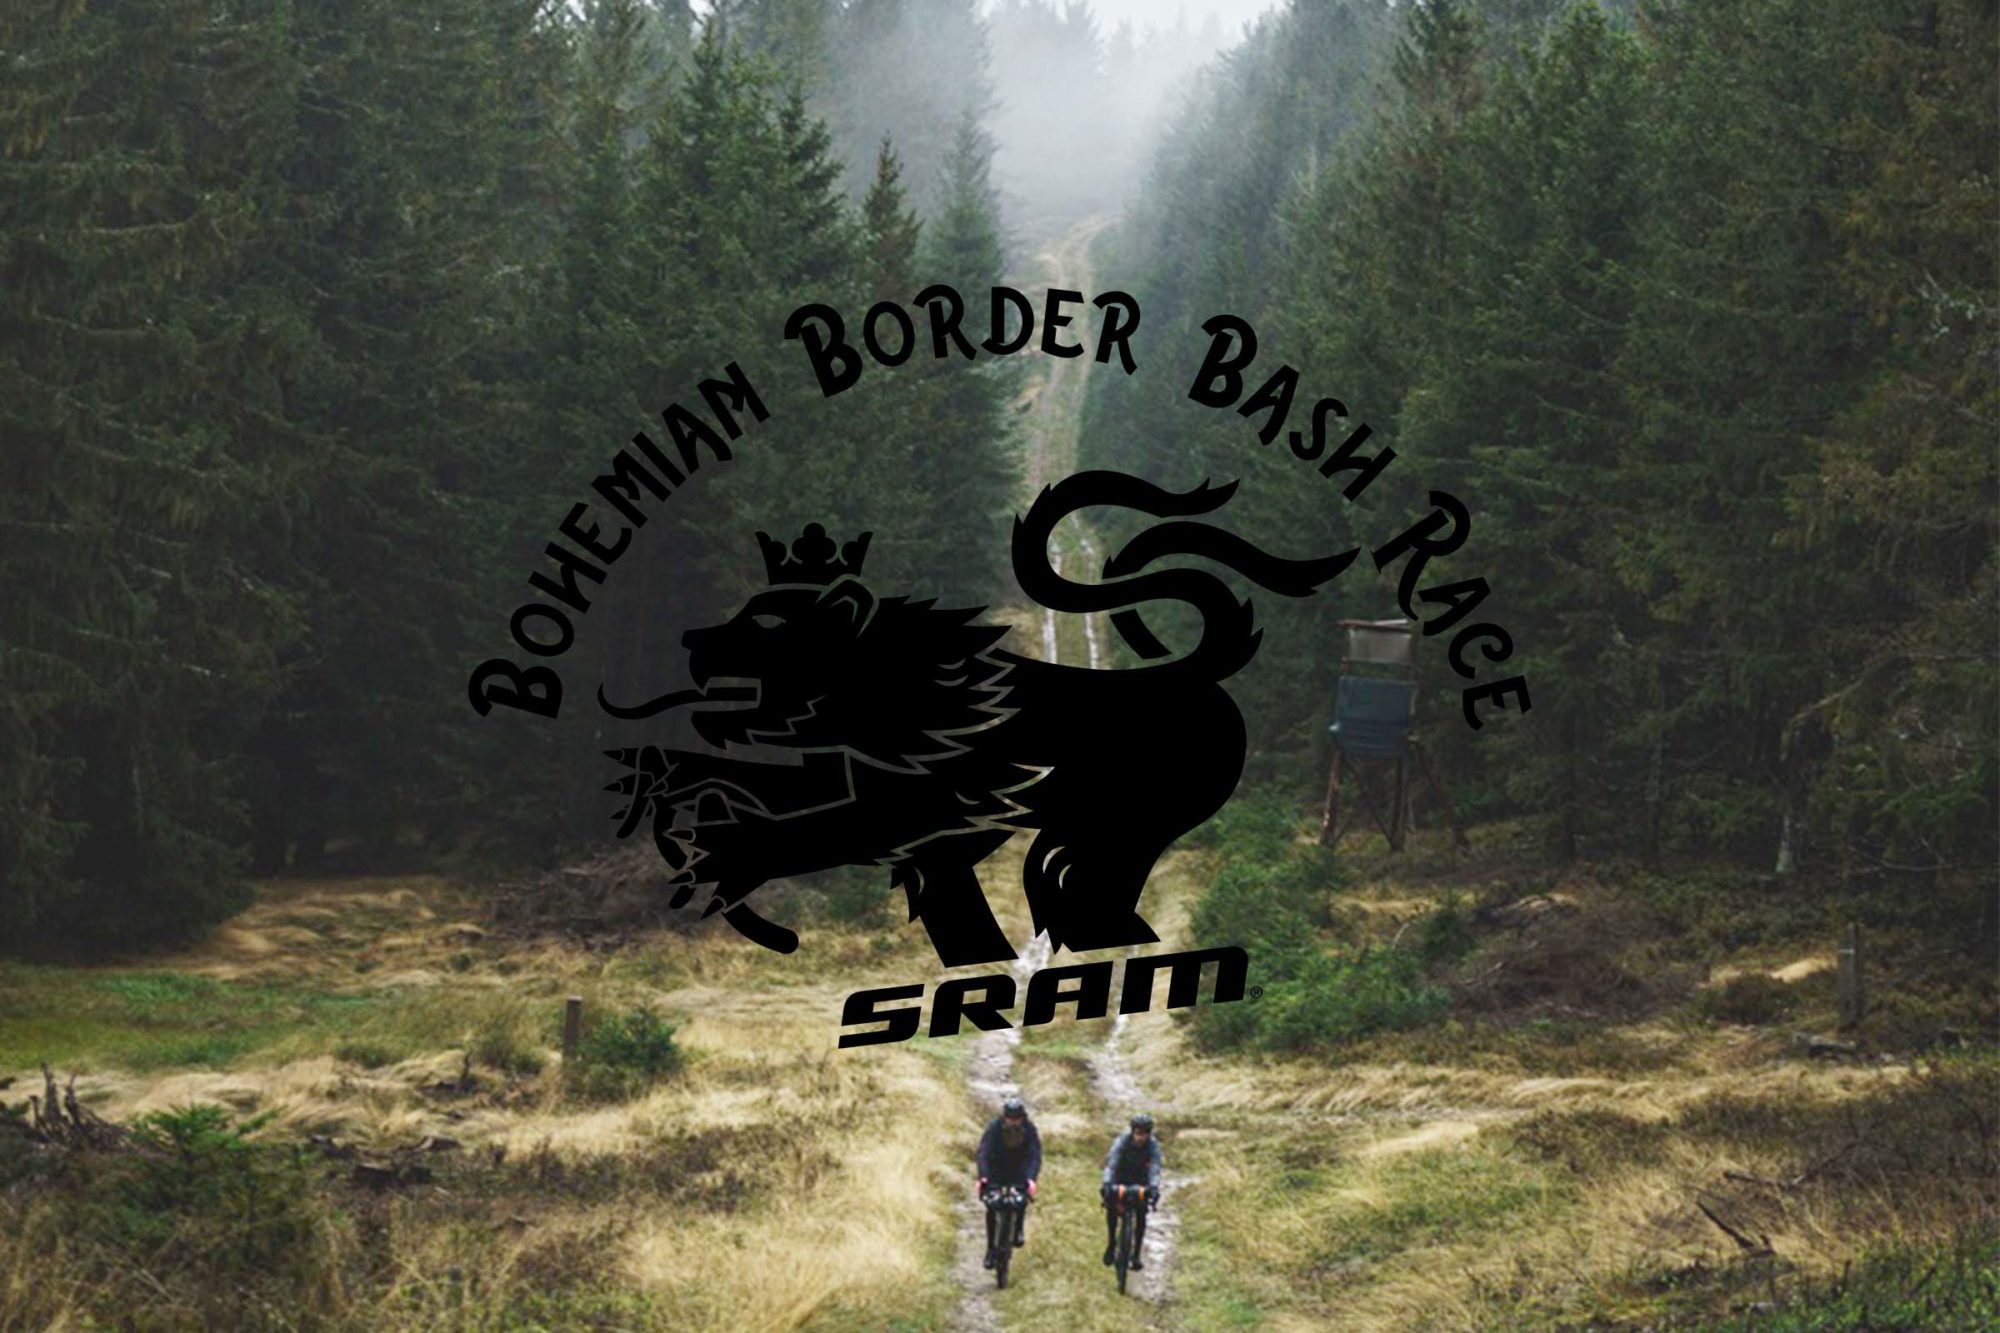 Bohemian Border Bash 2022